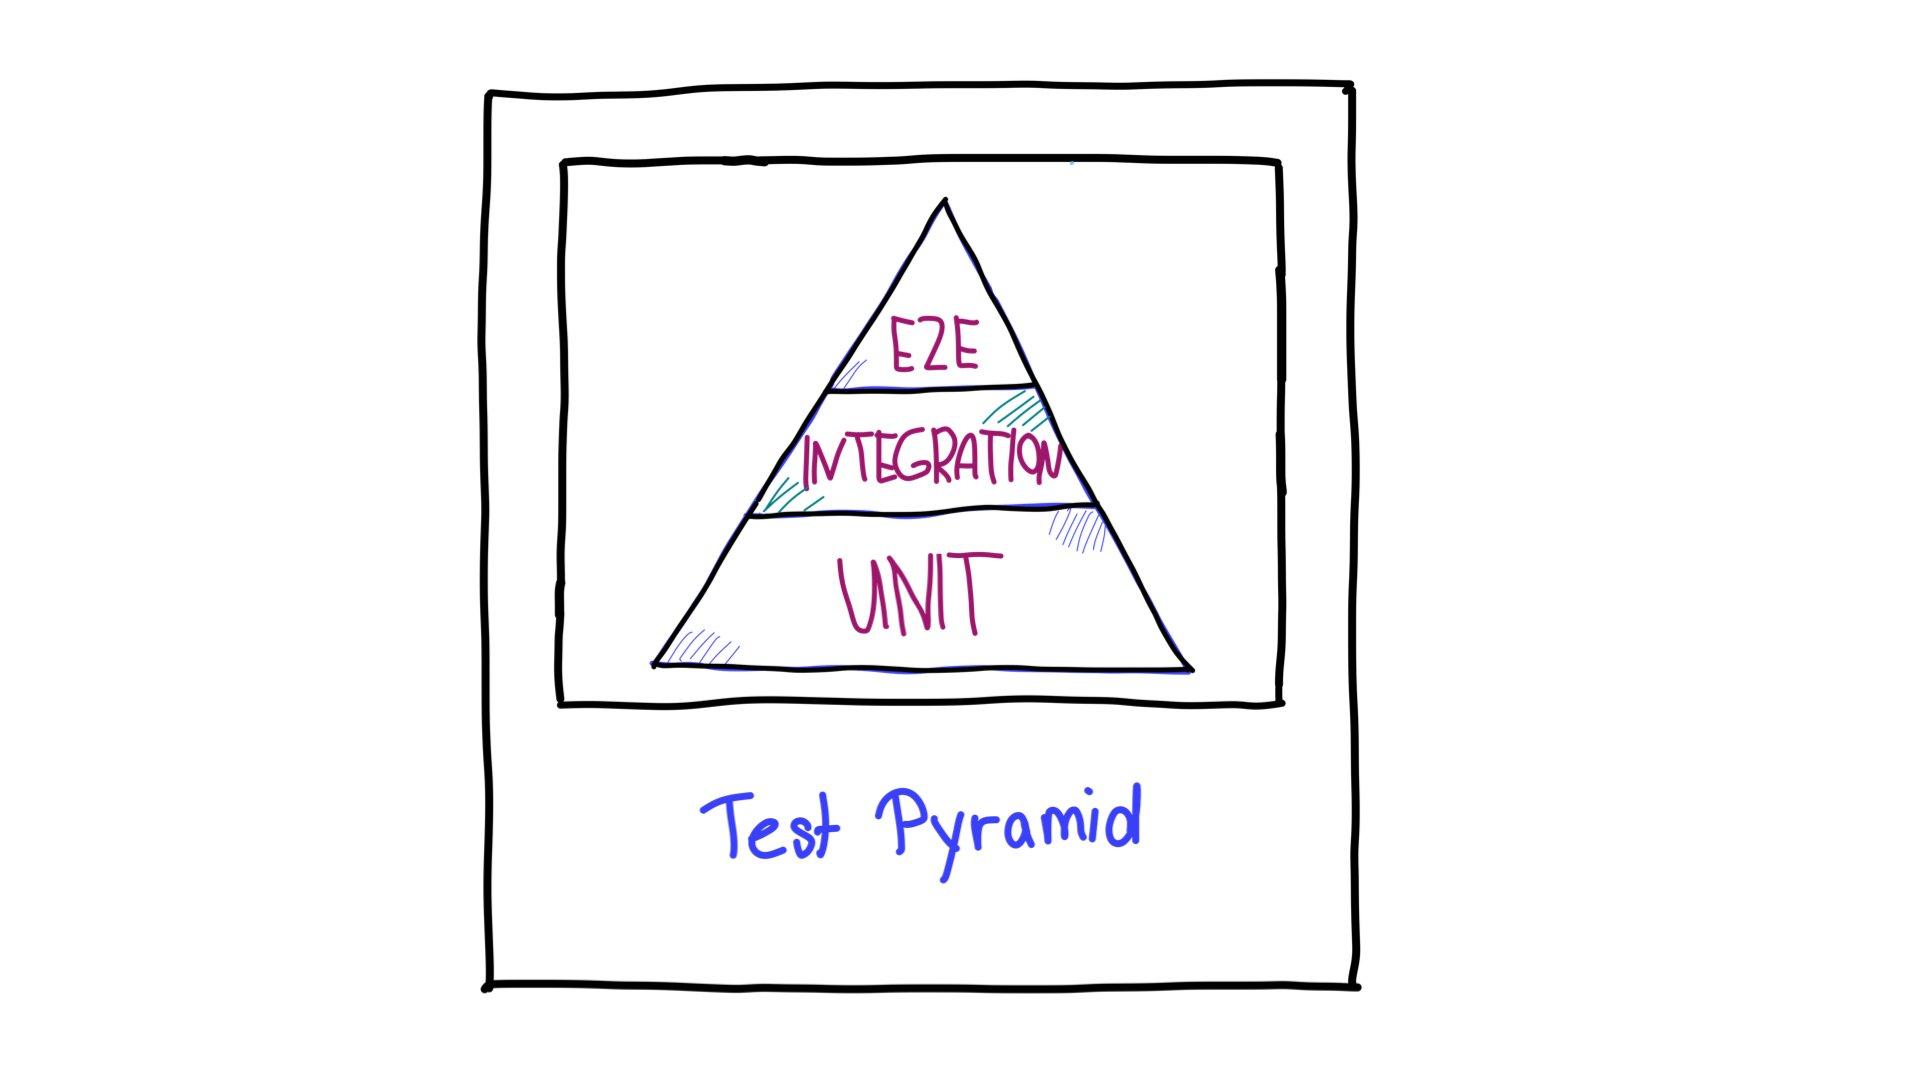 測試金字塔位於頂端，其中設有端對端 (E2E) 測試、中間的整合測試和底部的單元測試。